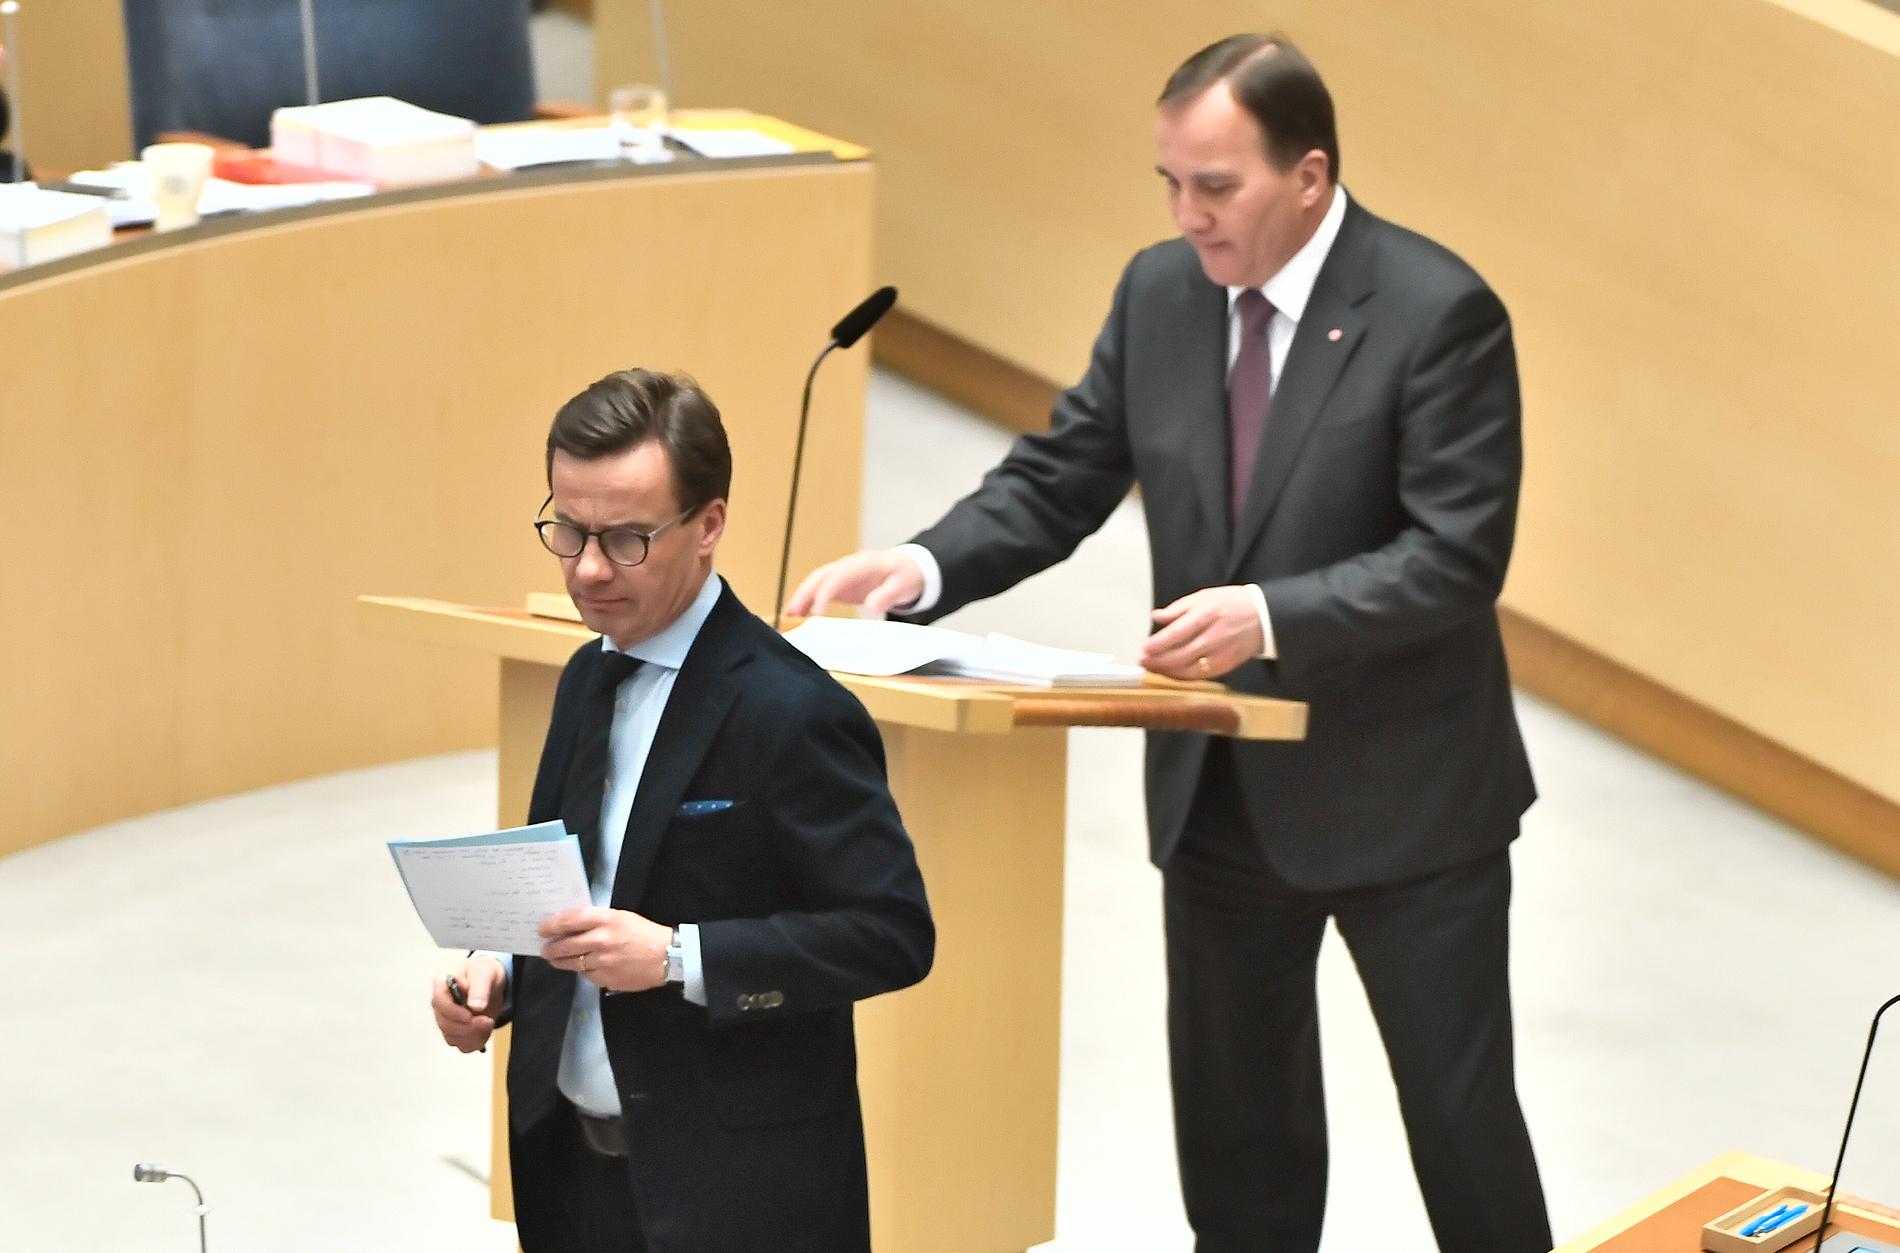 Moerternas partiledare Ulf Kristersson (M) och statsminister Stefan Löfven (S) under partiledardebatt i riksdagen i Stockholm.